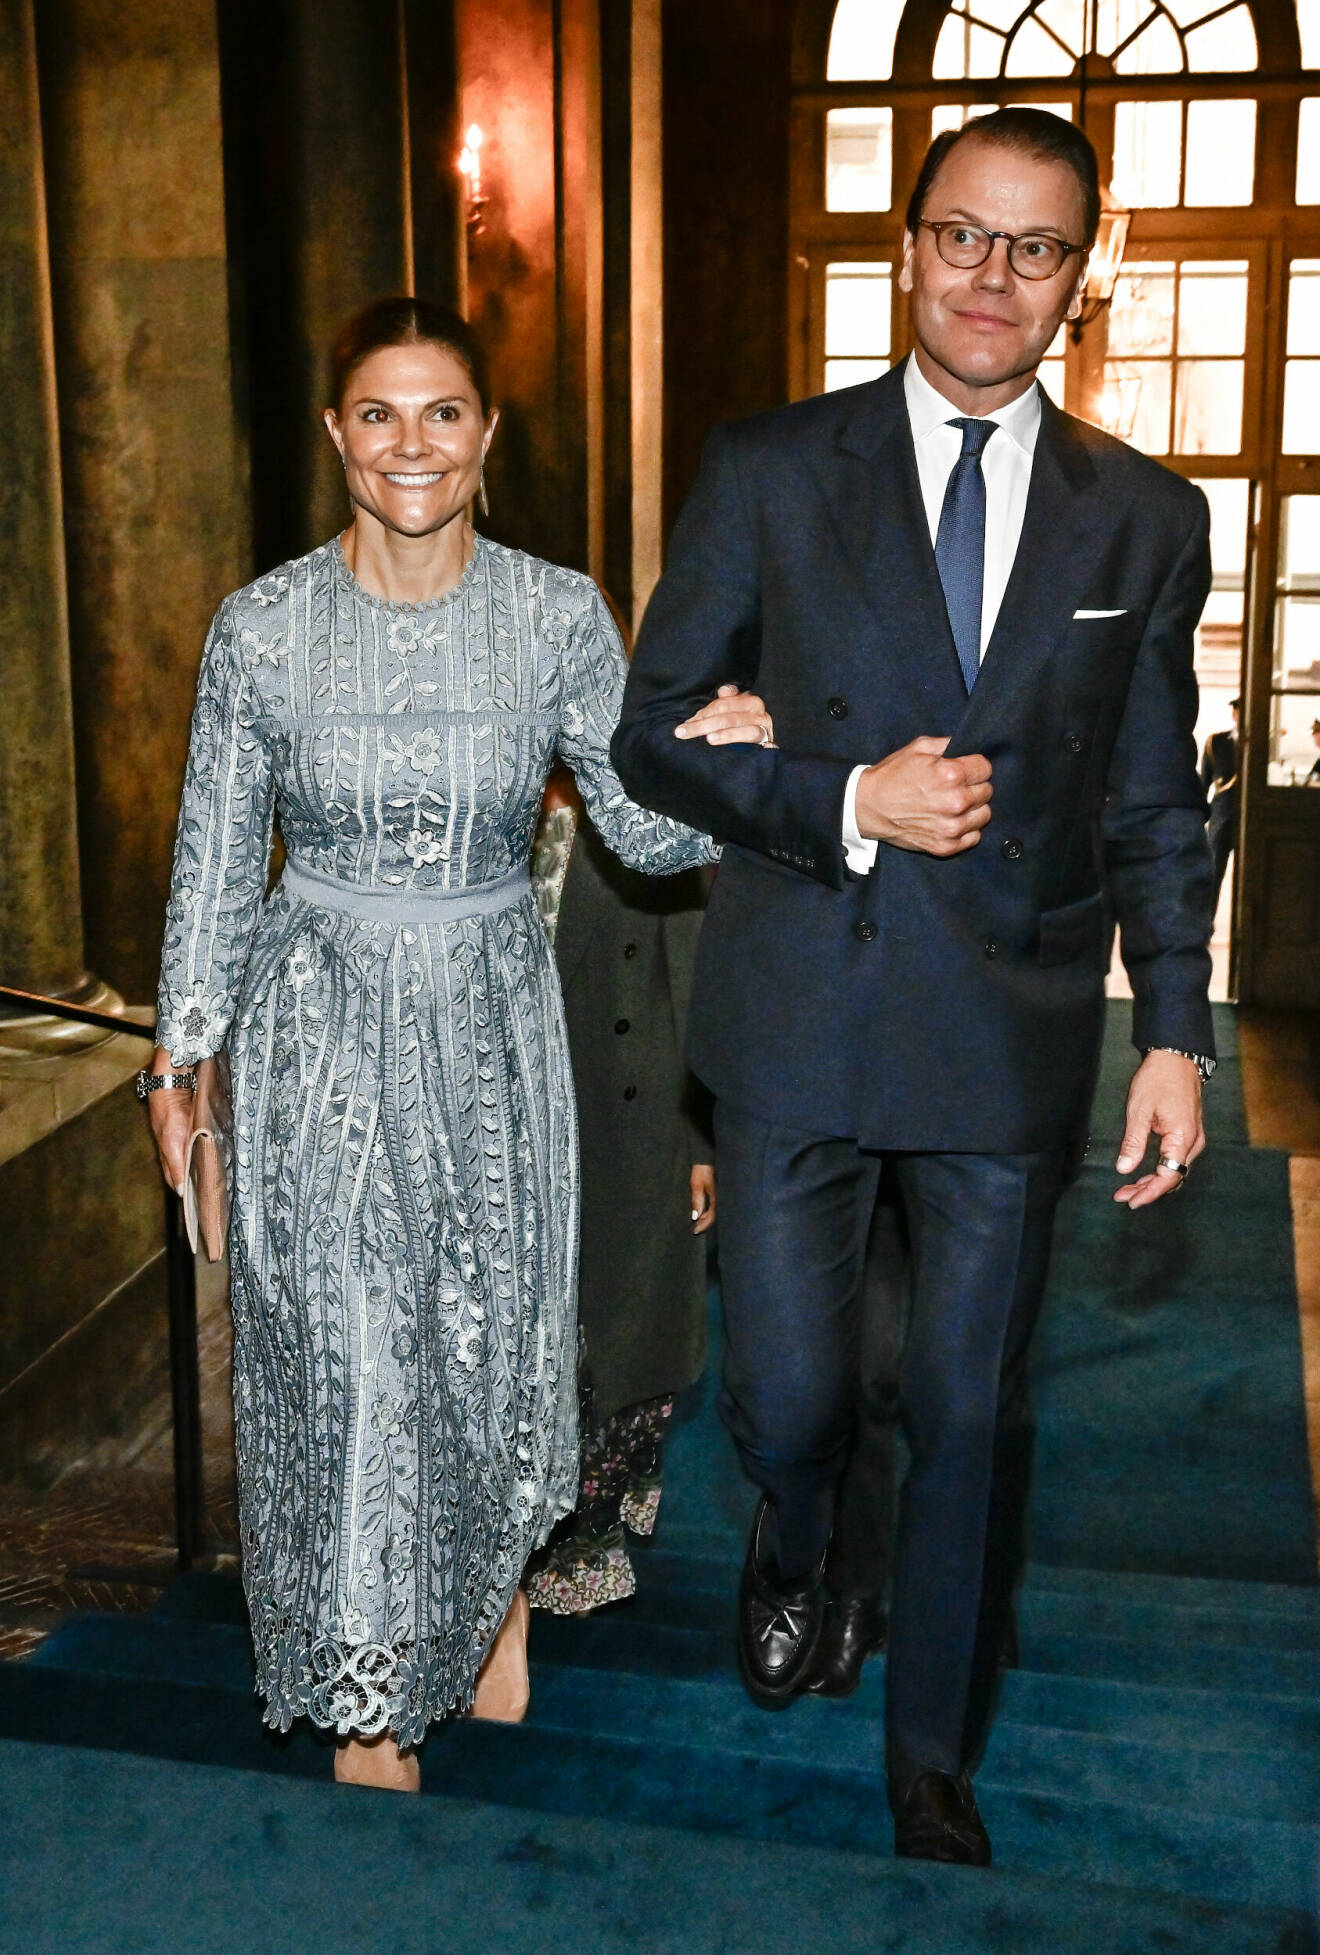 Kronprinsessan Victoria och prins Daniel, vid en mottagning på Kungliga slottet i Stockholm där en gåva från riksdag och regering överlämnades till kungen.